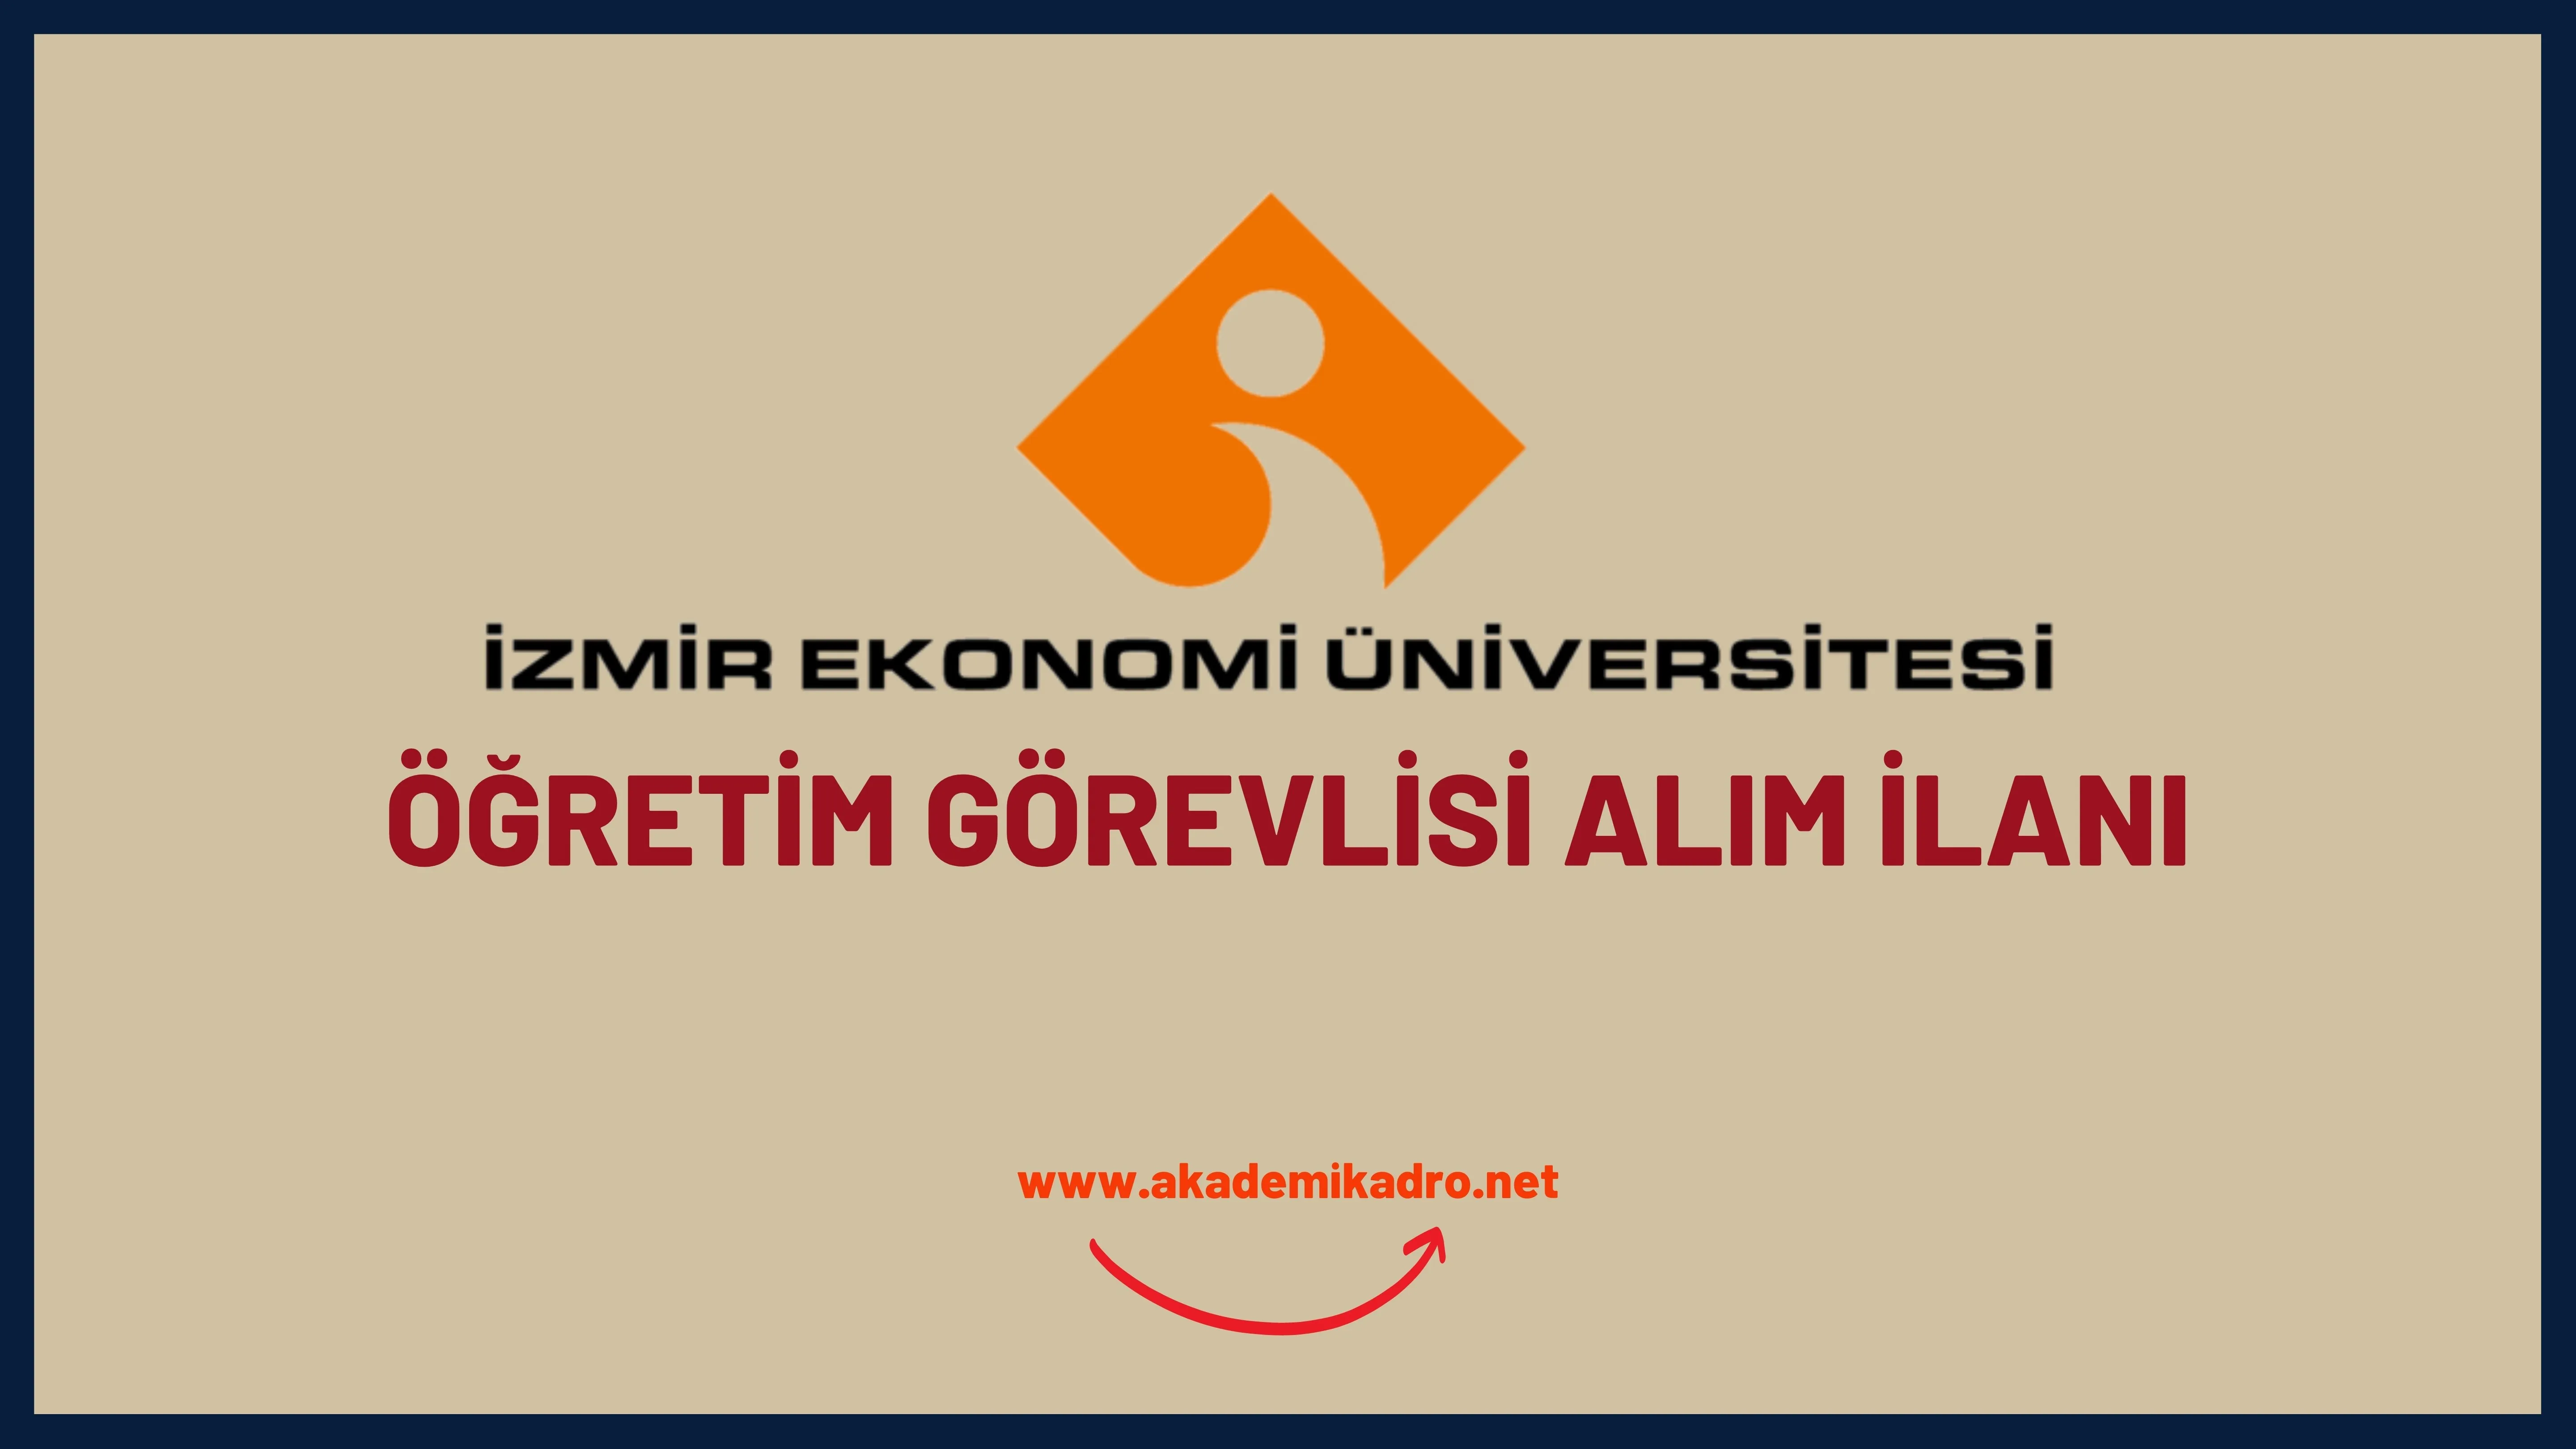 İzmir Ekonomi Üniversitesi 2 öğretim görevlisi alacak.